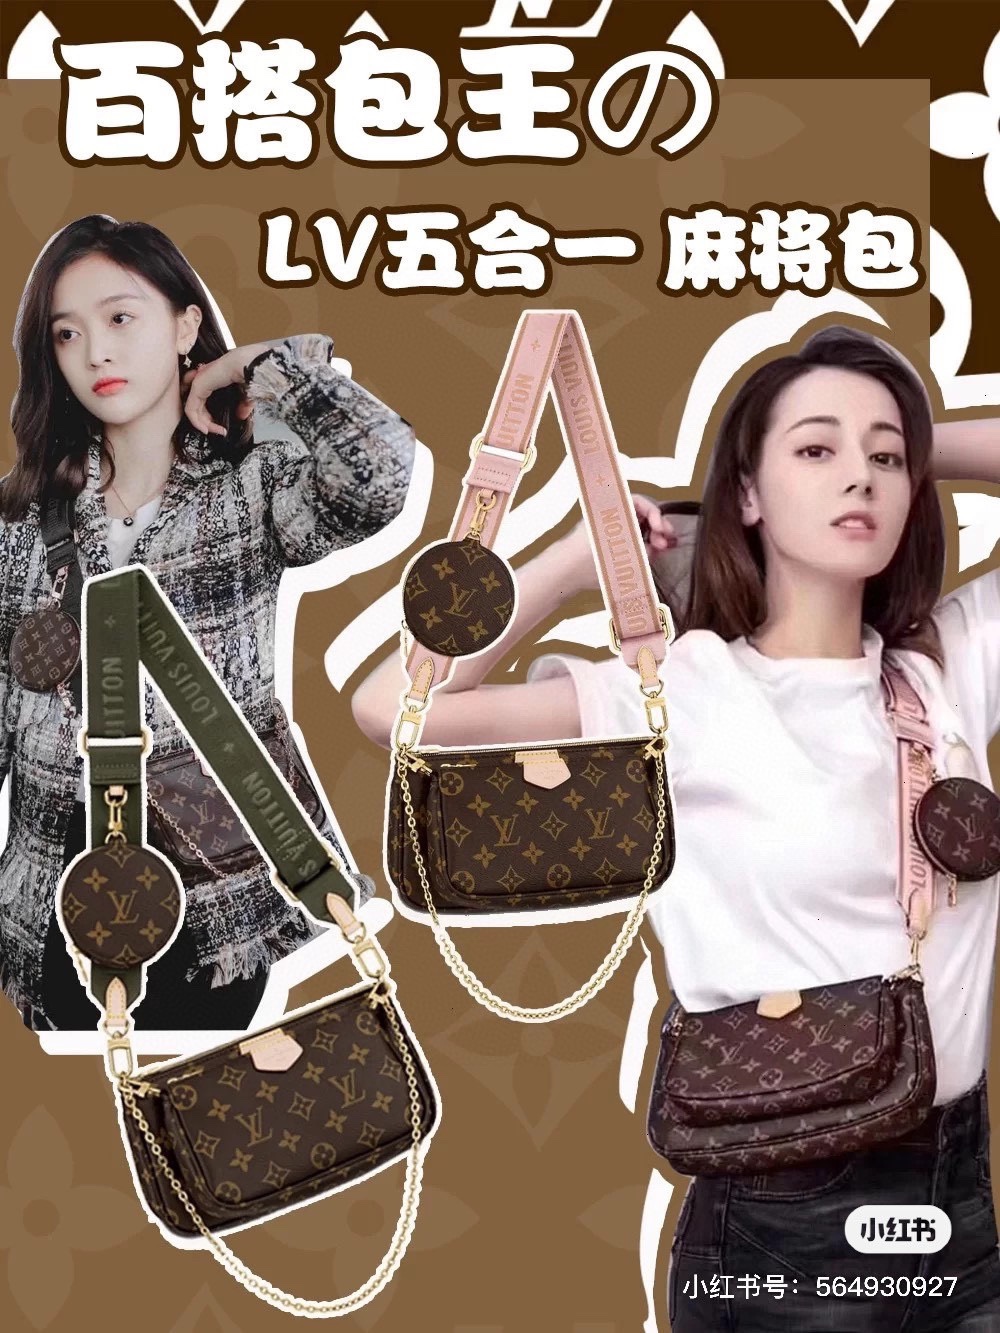 V.yupoo Louis Vuitton Bags For Women